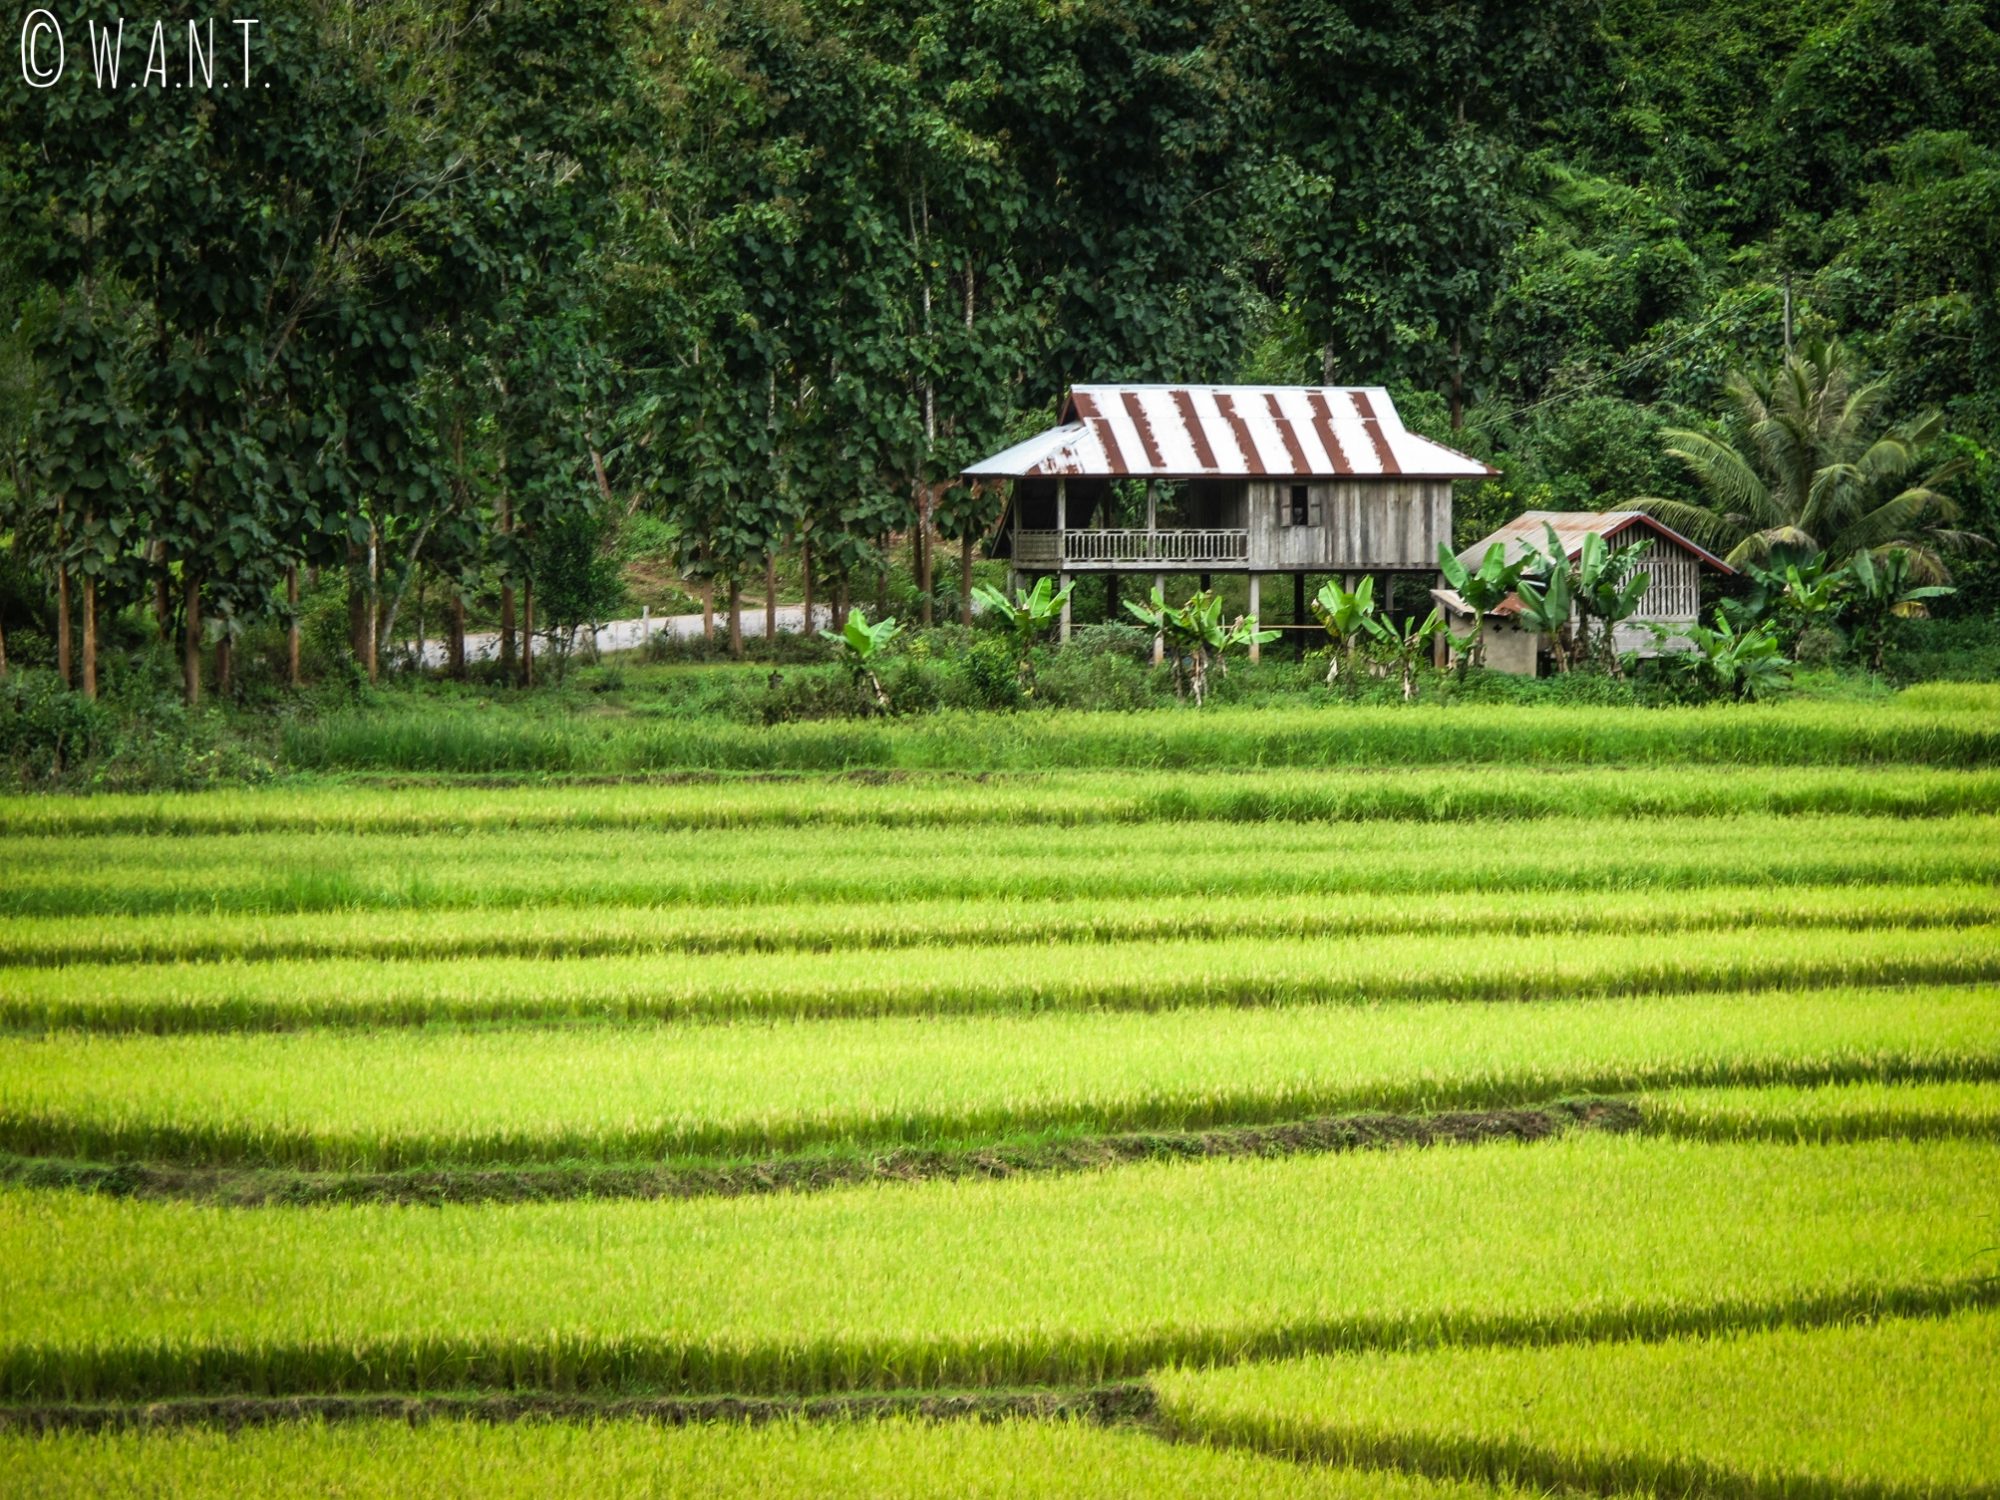 Maison sur pilotis au milieu des rizières près de Luang Namtha